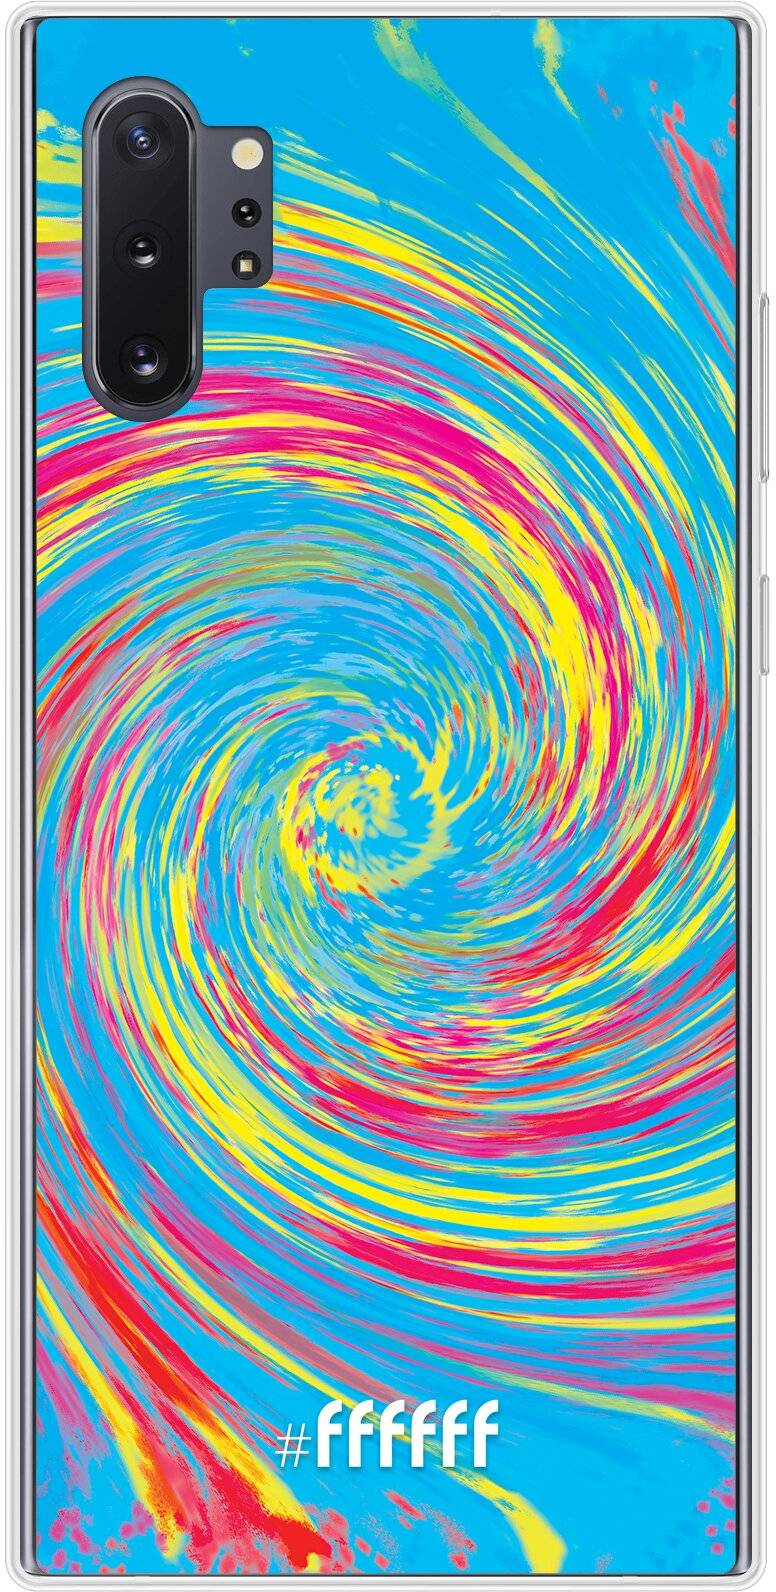 Swirl Tie Dye Galaxy Note 10 Plus